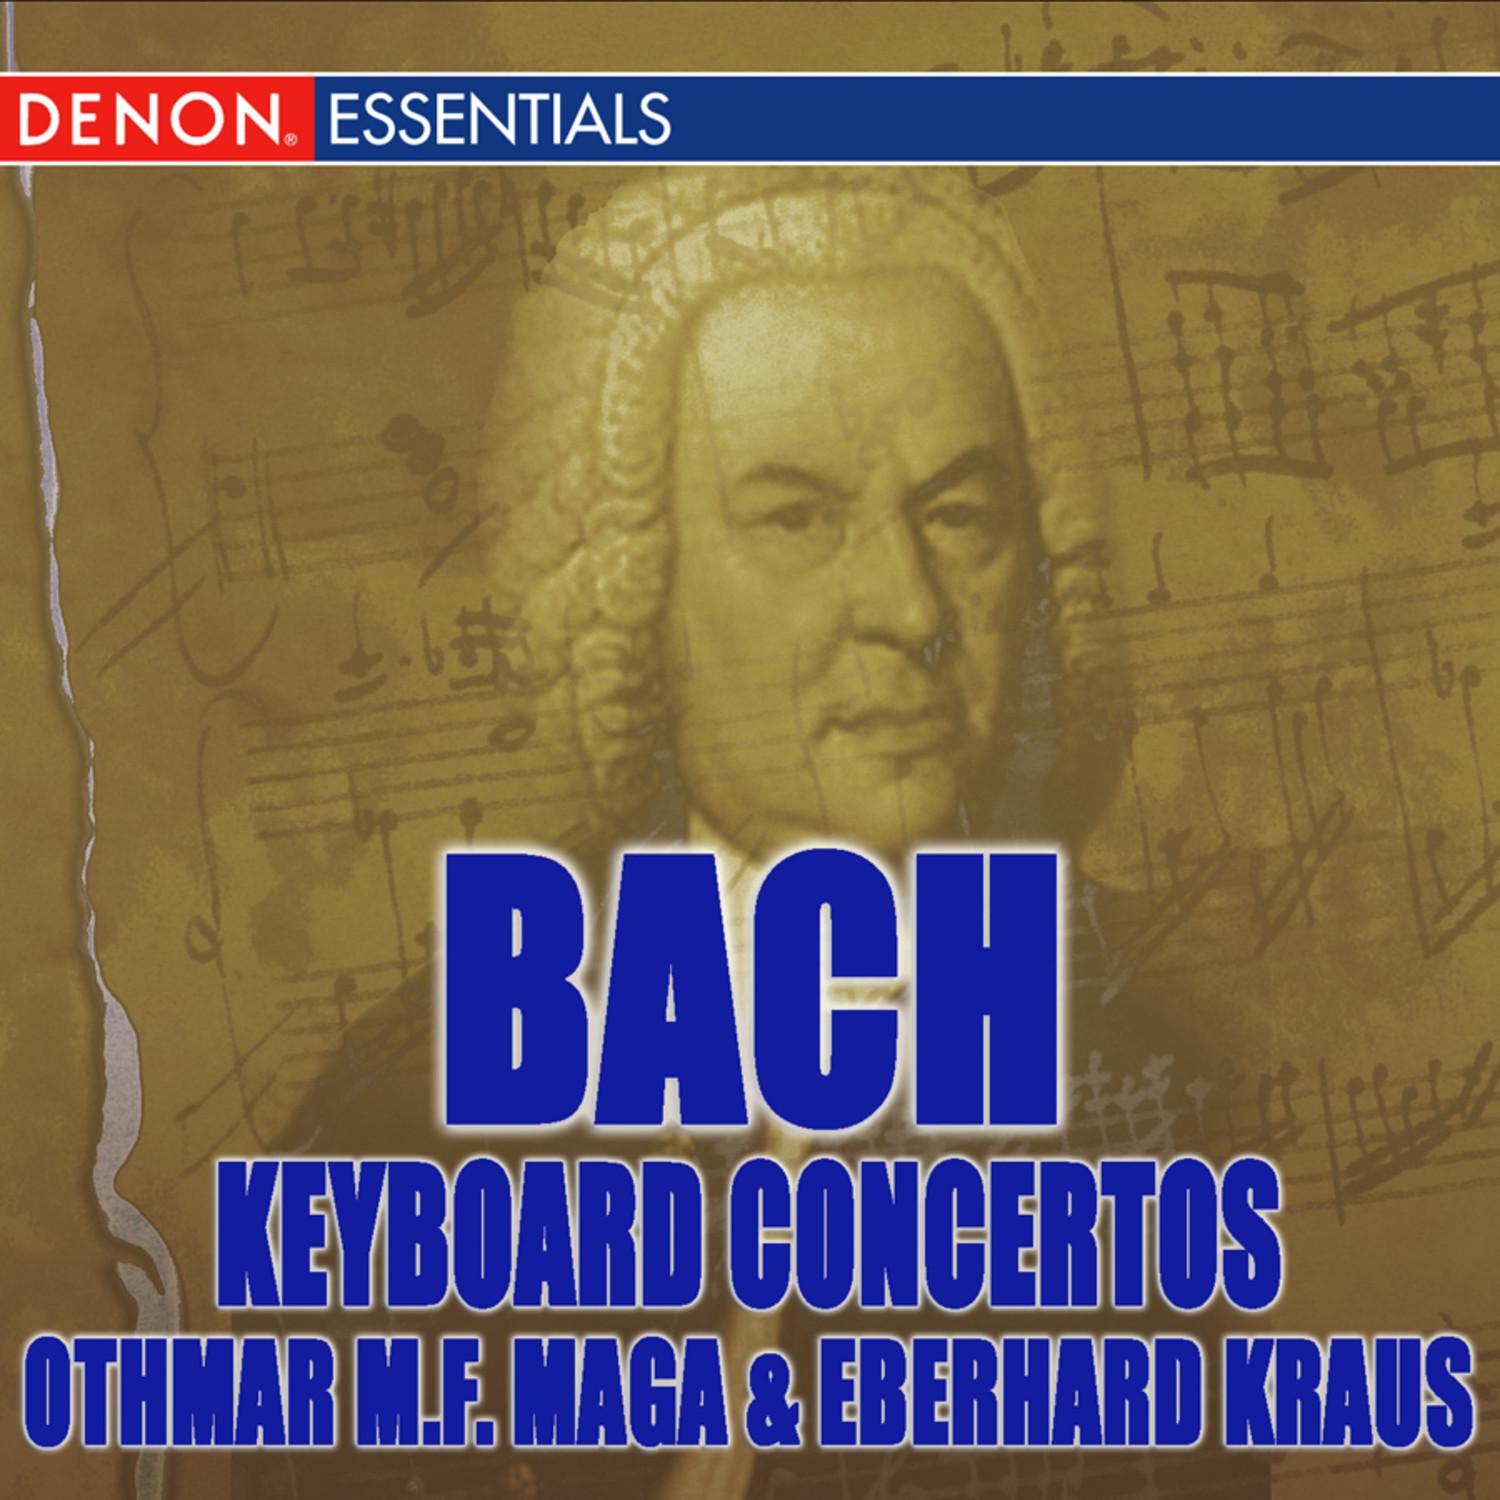 Concerto II for Piano and Orchestra in E Major, BWV 1053: III. Allegro